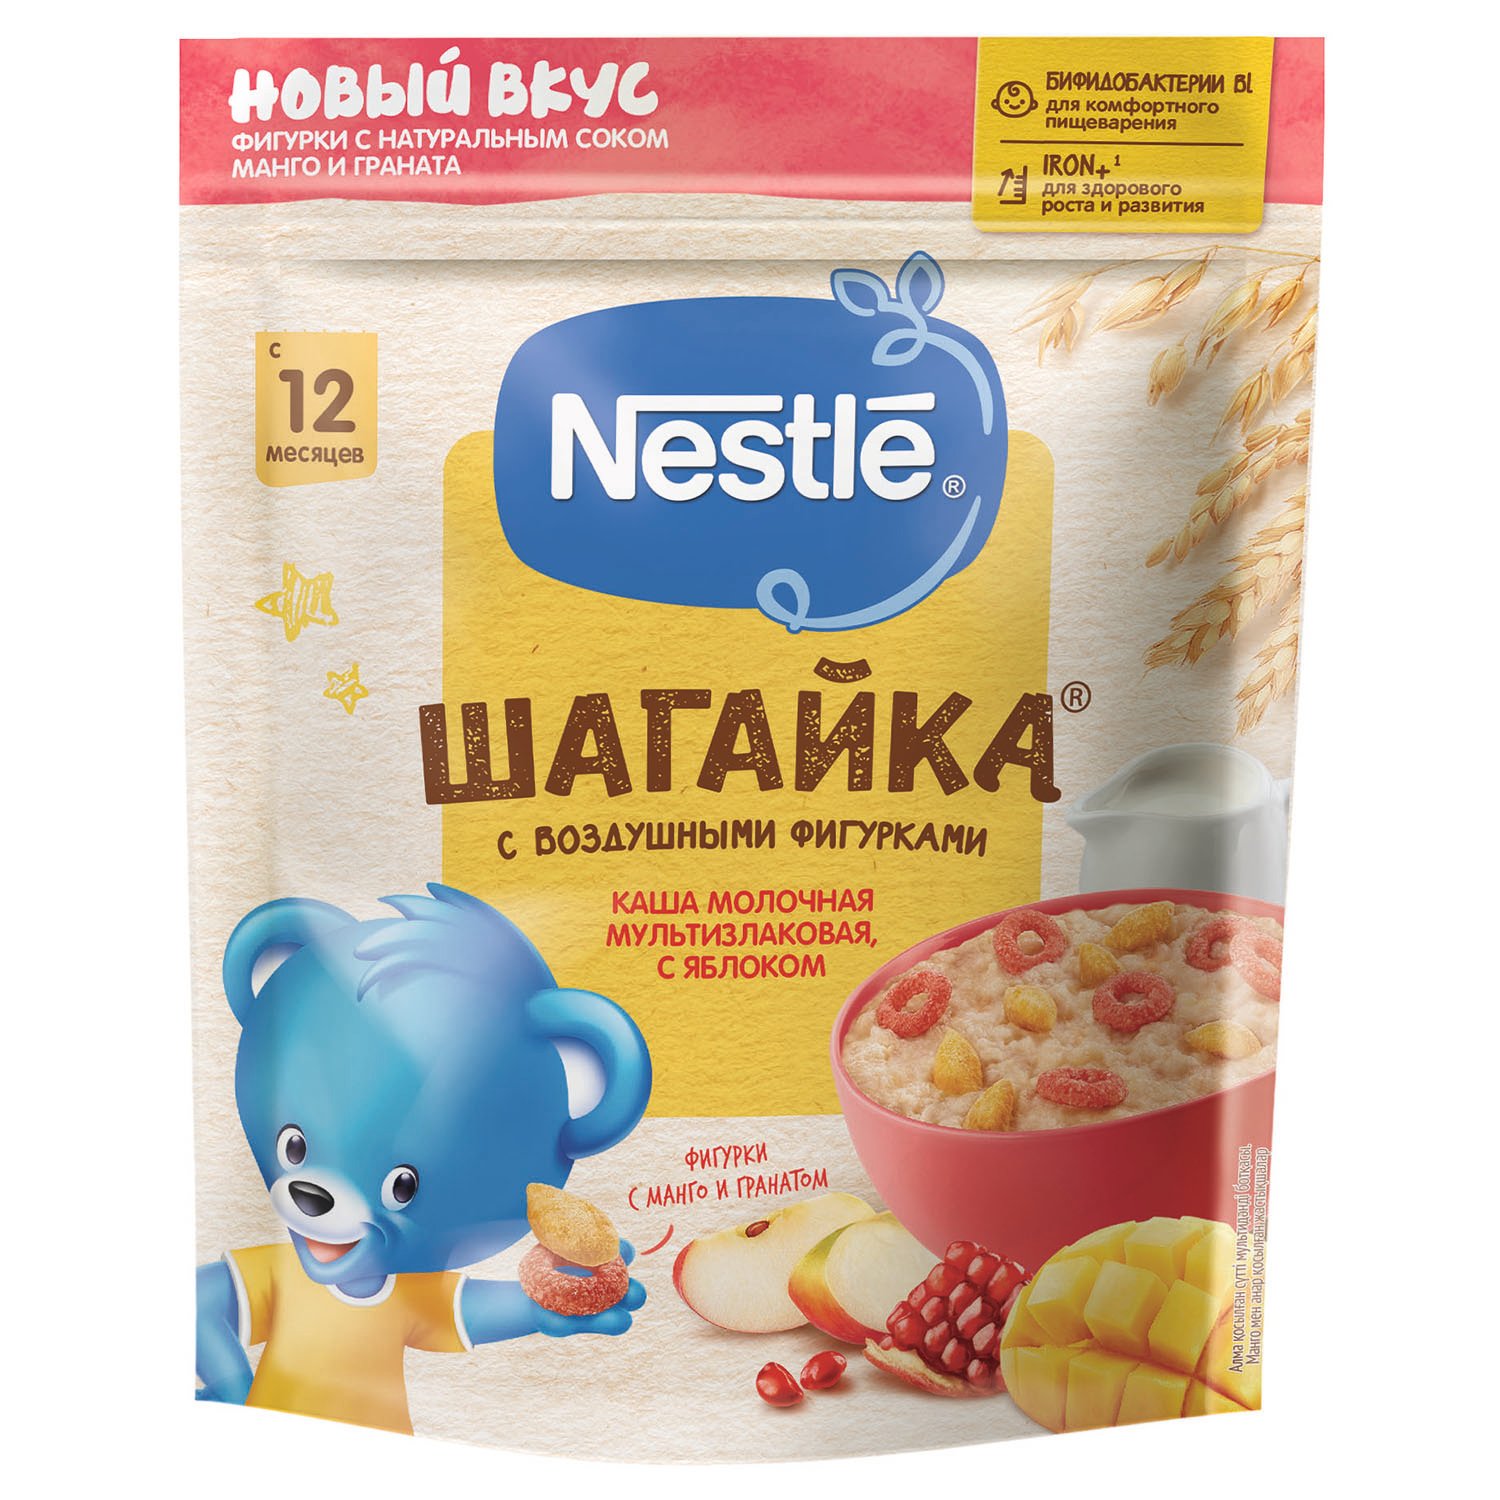 Нестле(Nestle) Каша Молоч мультизлак яблоко/манго/гранат Шагайка 190г